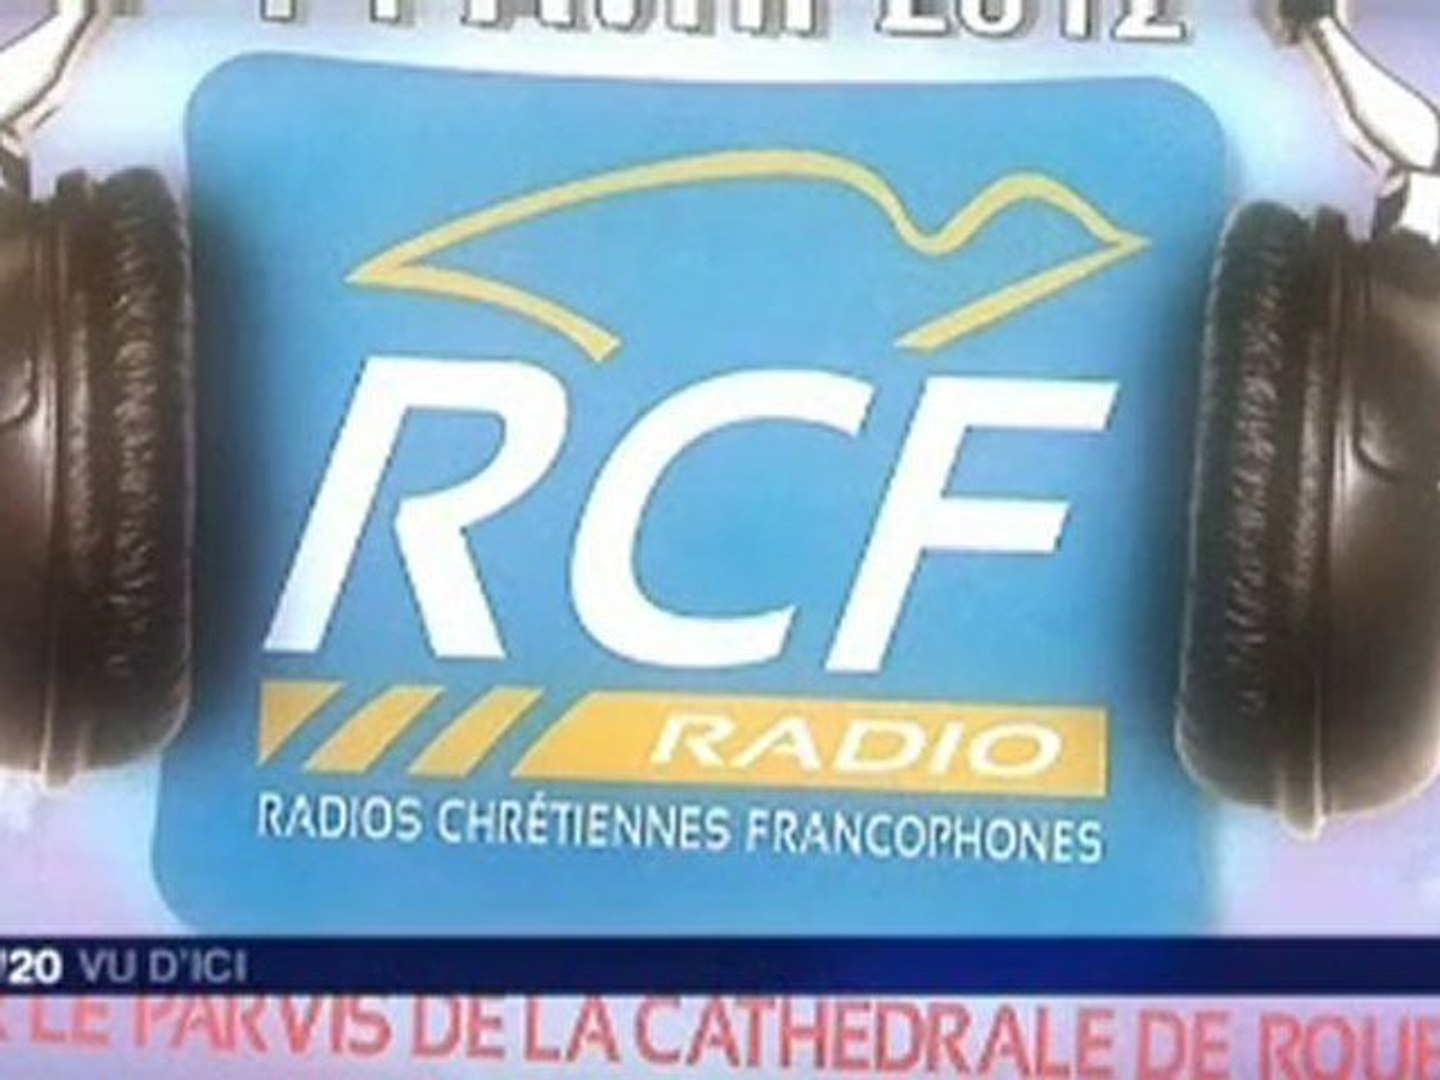 RCF, radio chrétienne francophone en Haute-Normandie a 20 ans - Vidéo  Dailymotion